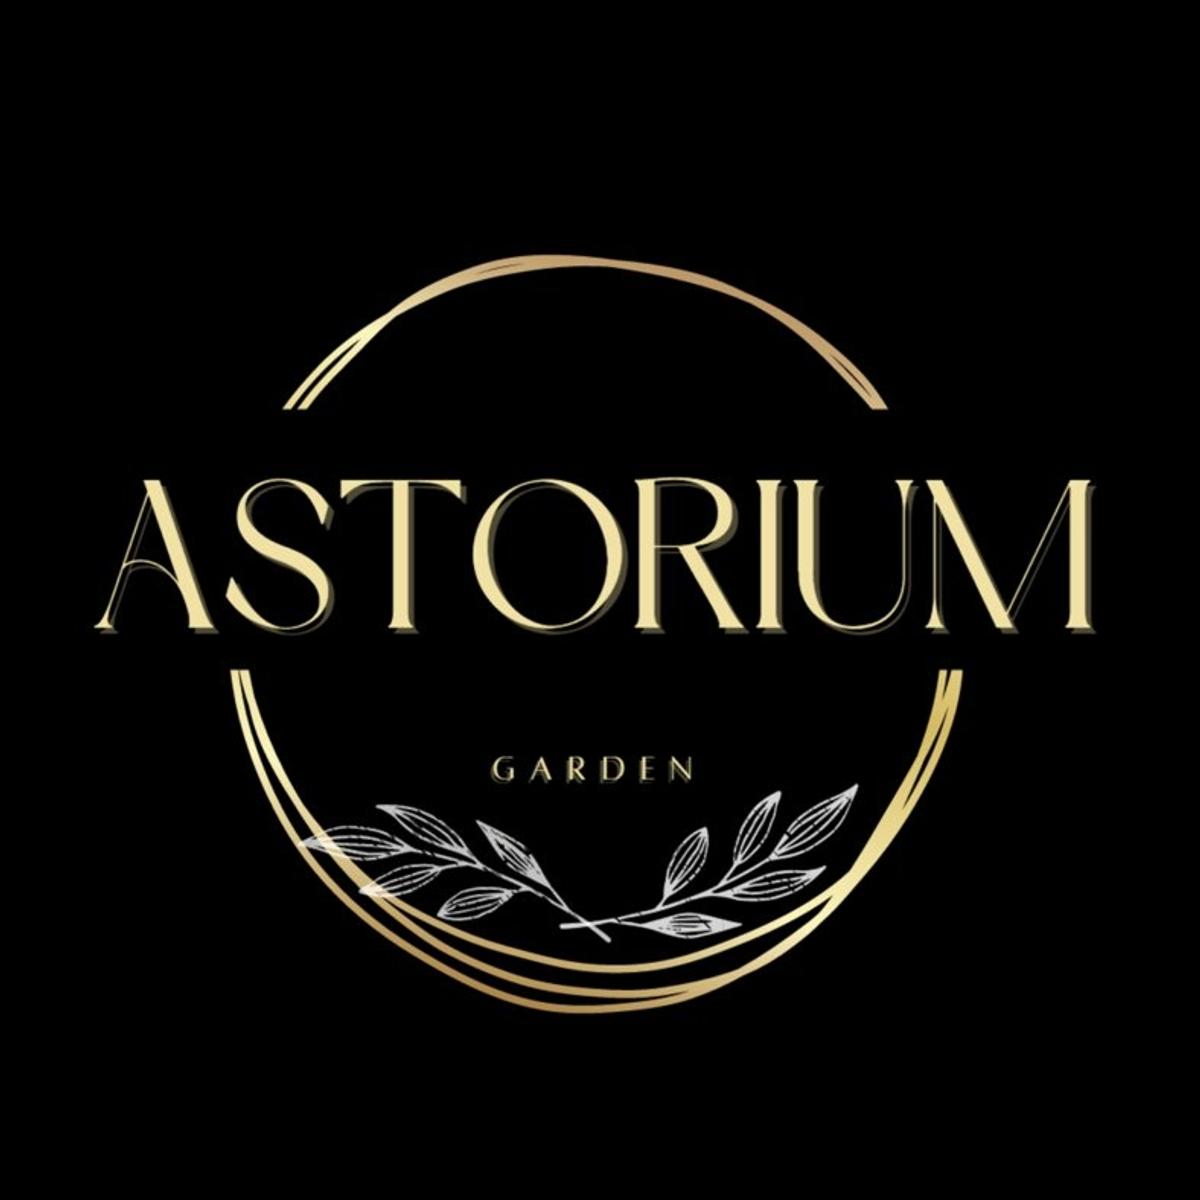 Astorium